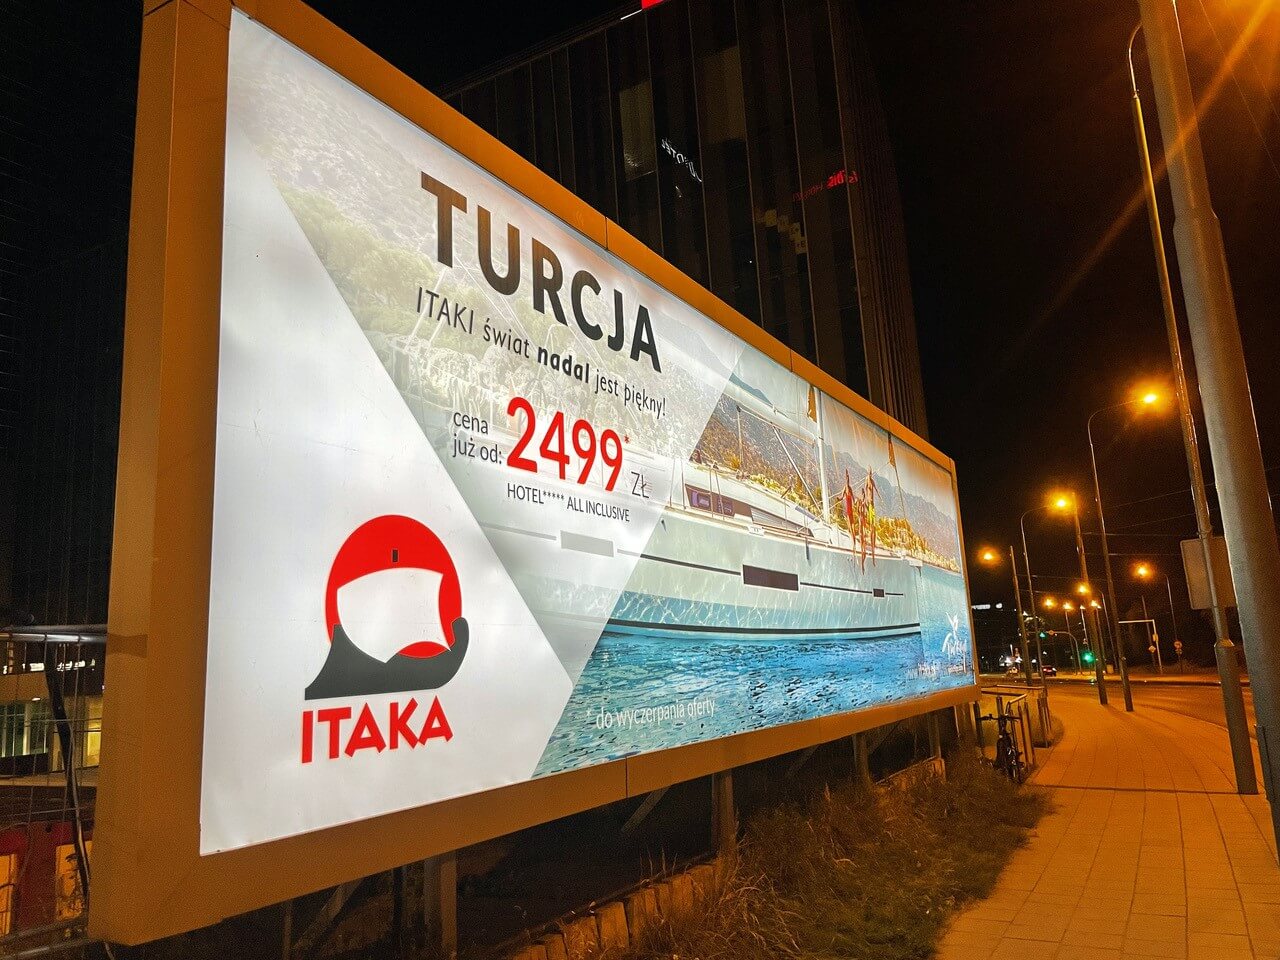 Wakacje w Turcji reklama Itaka backlight Grupa RW